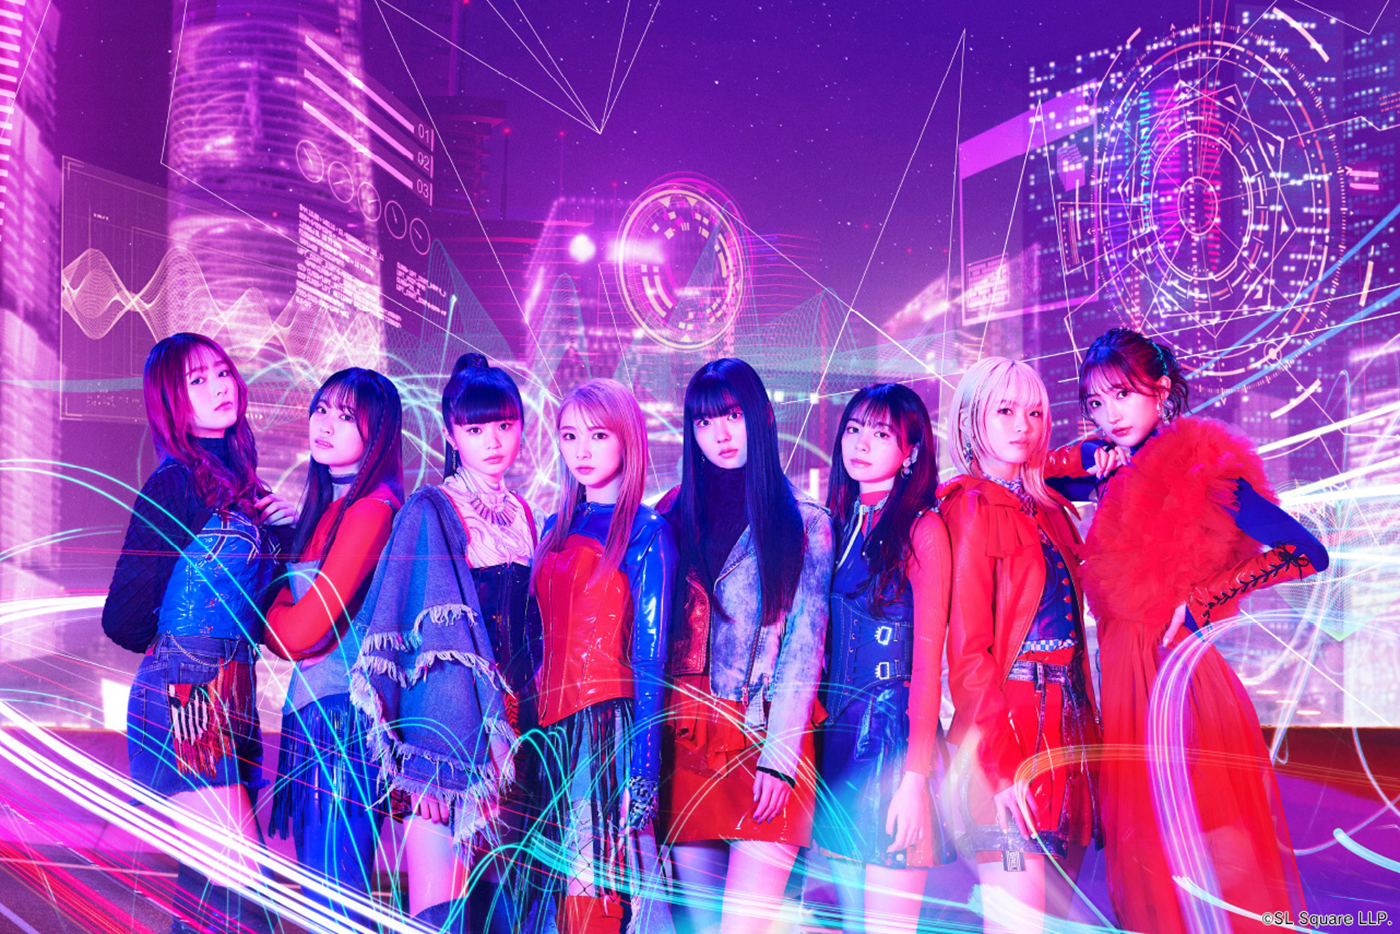 Girls²、恒例の人気コラボイベント『Girls² Park 2023』がさがみ湖リゾート プレジャーフォレストにて開催決定